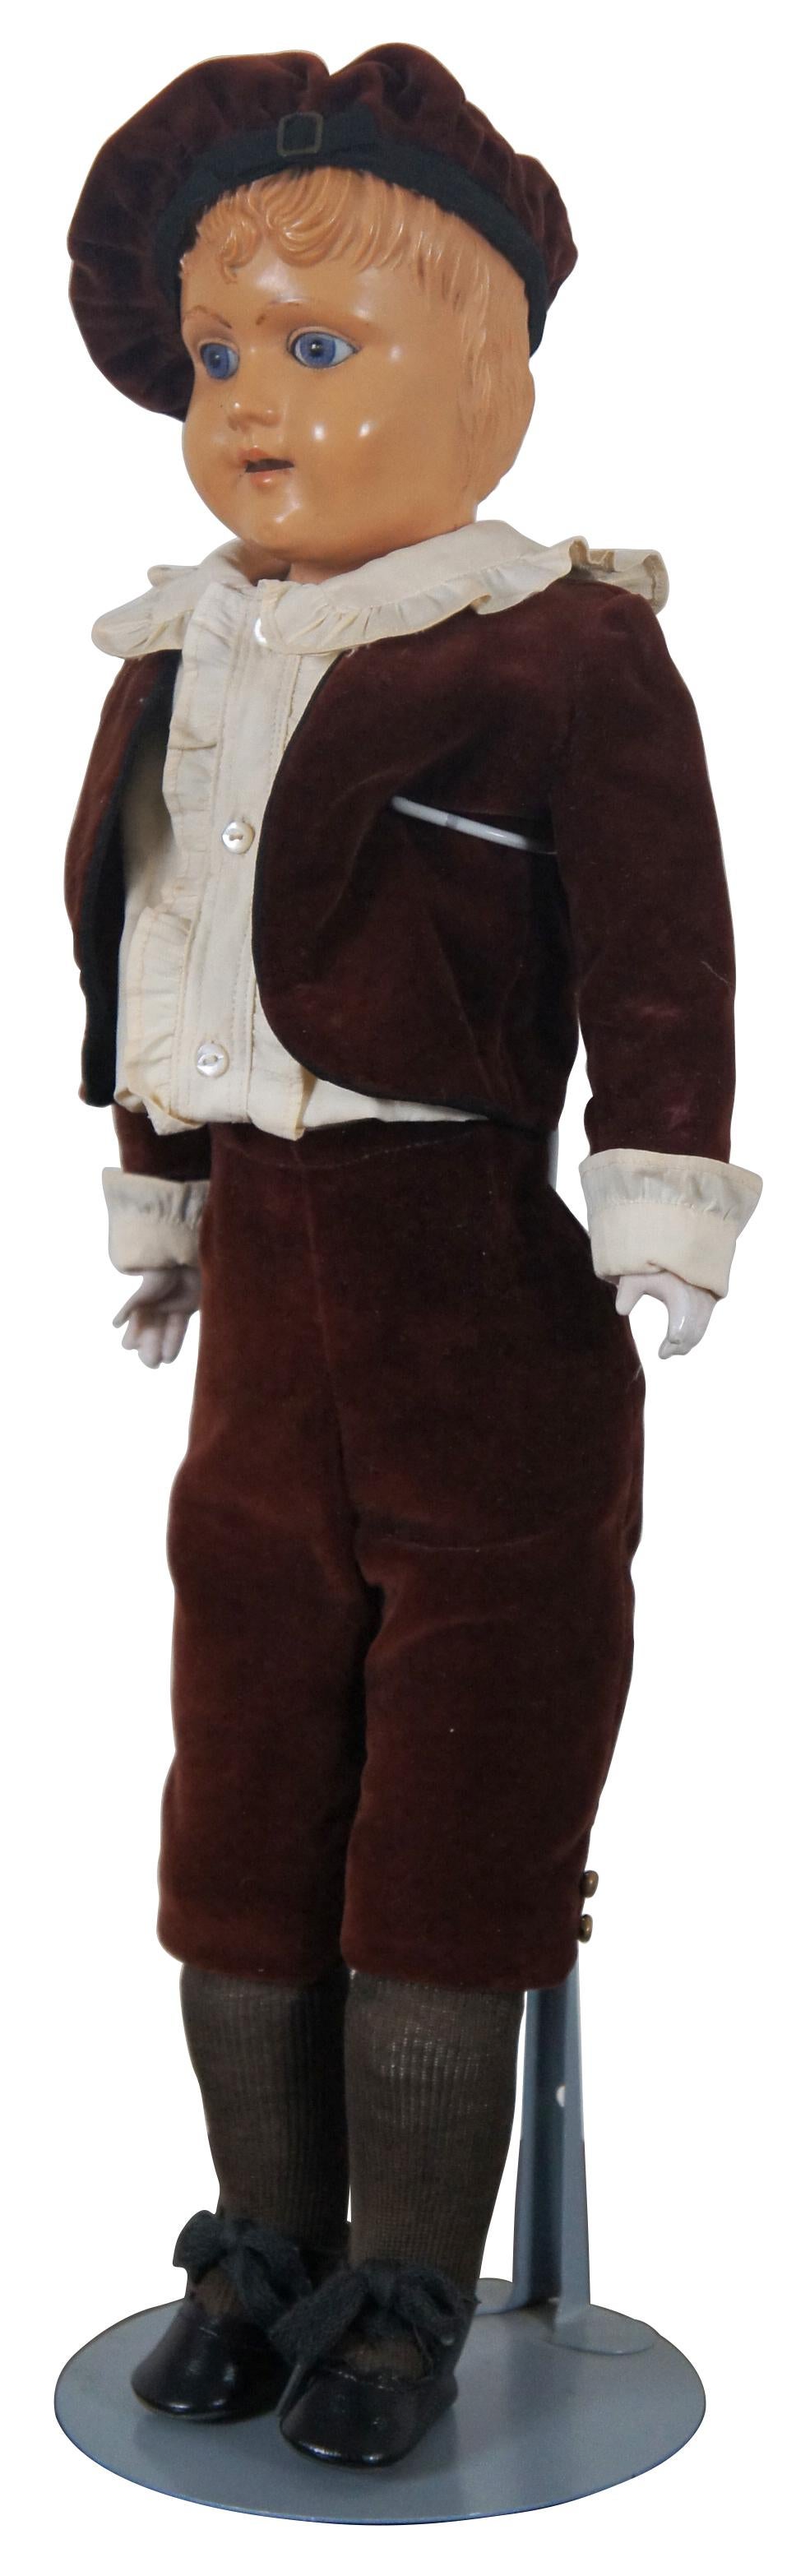 CIRCA 1903 antike Puppe von Schutz-Marke Deutschland mit Zelluloidkopf und gegliedertem Lederkörper, Komposithänden und bekleidet mit einem burgunderroten Lederanzug und schottischer Haube. 